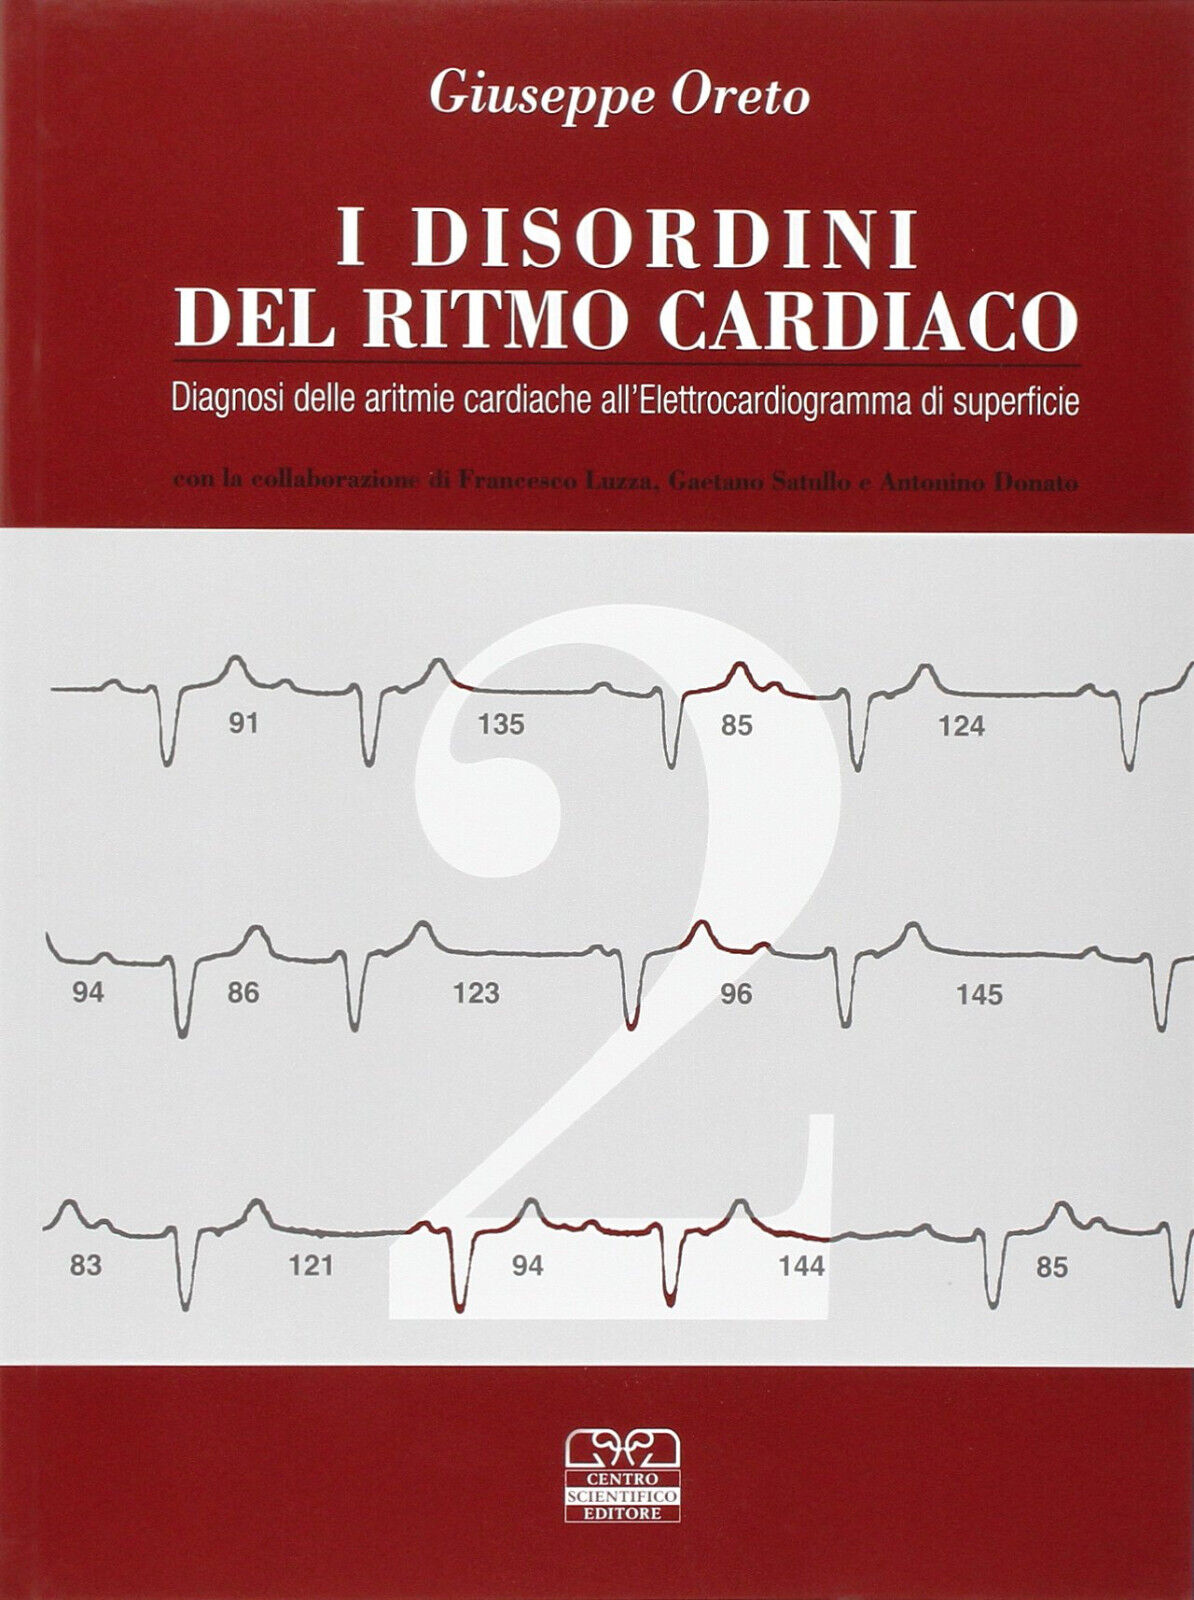 I disordini del ritmo cardiaco - Giuseppe Oreto - Centro Scientifico, 1997